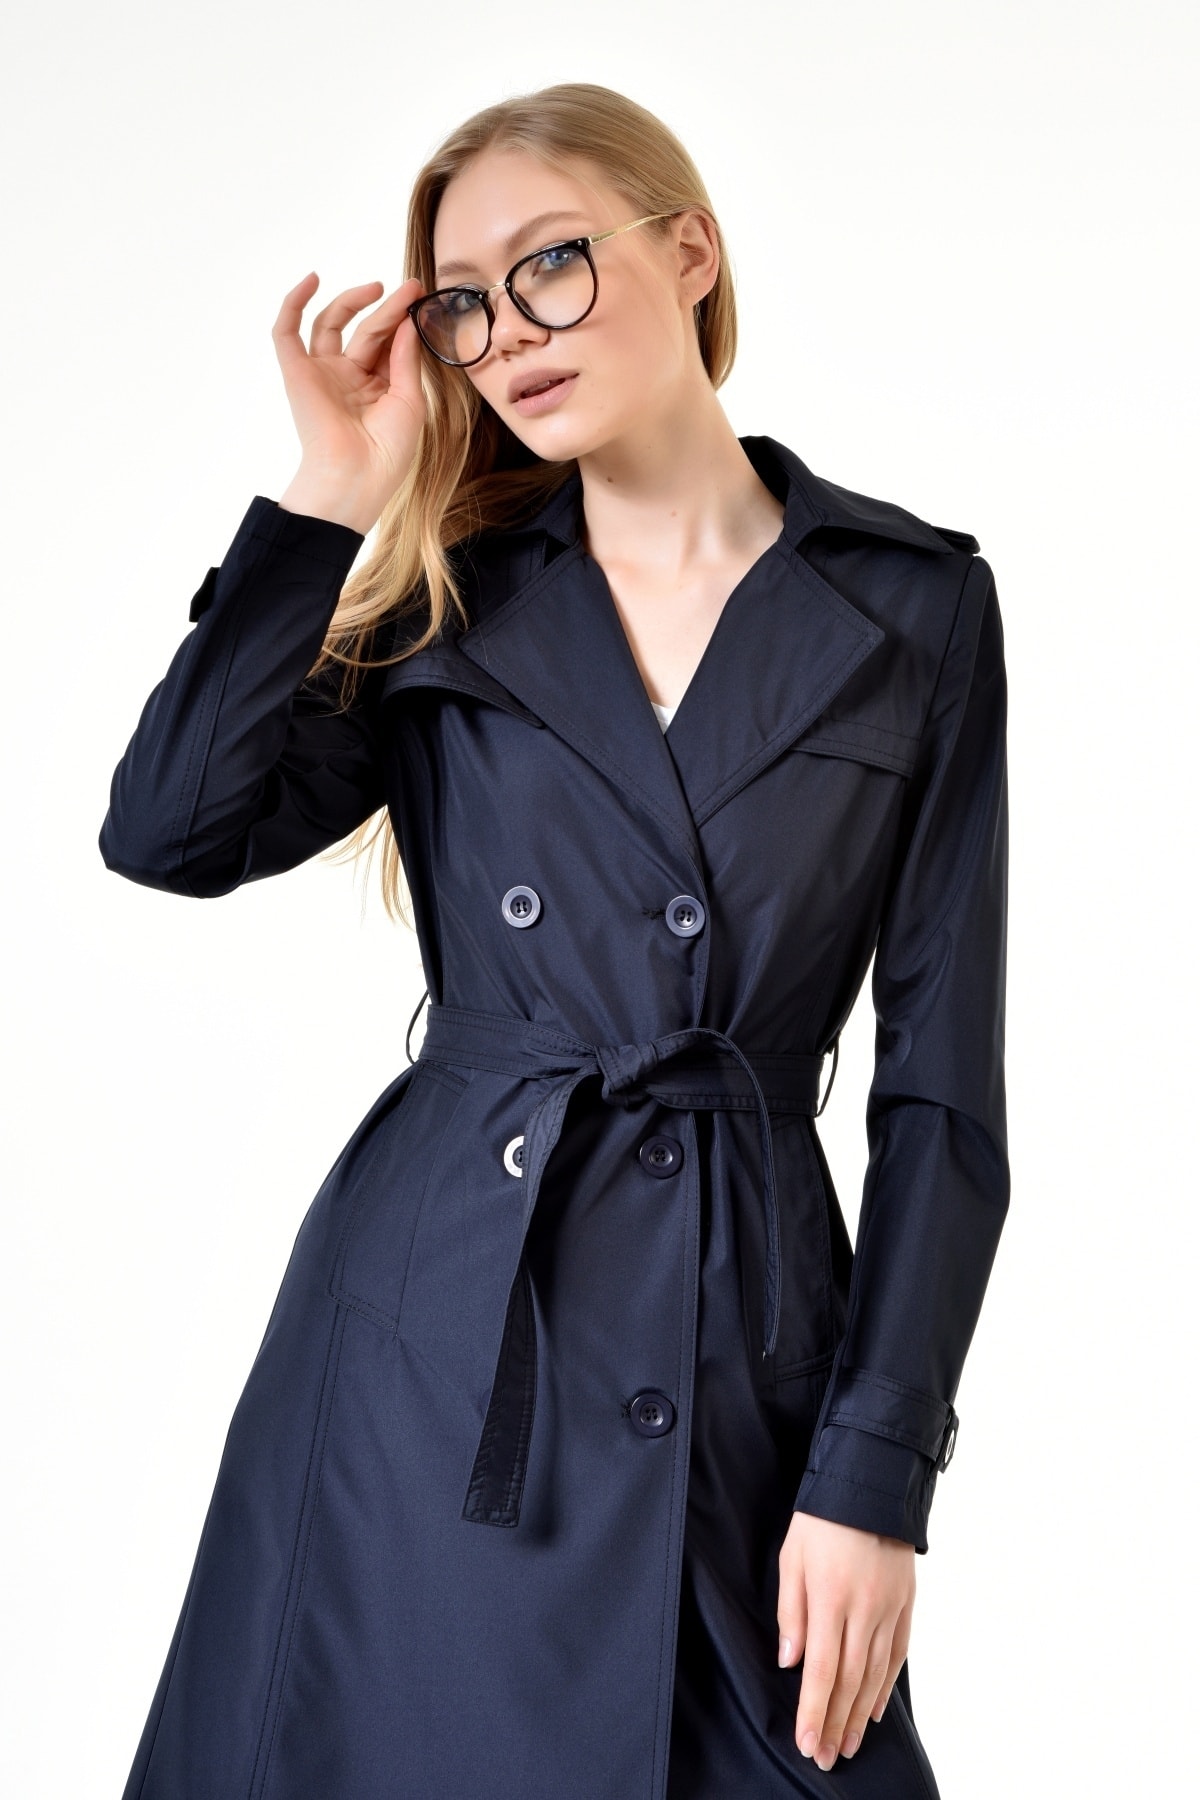 discount 76% Zara Long coat WOMEN FASHION Coats Knitted Navy Blue L 